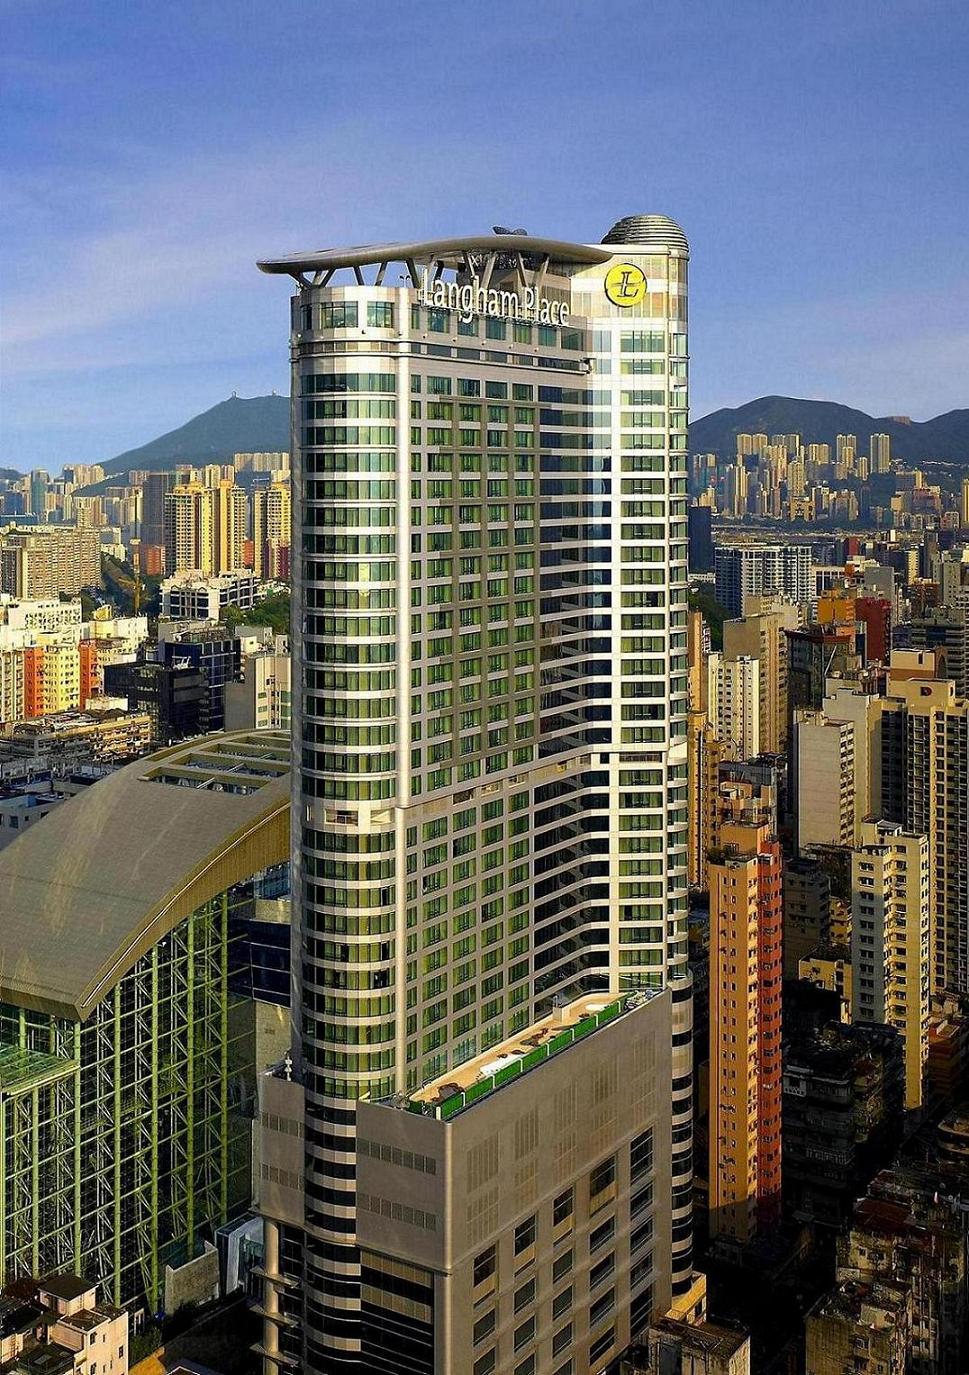  Langham  Place Hotel Hong  Kong  Asian Vacation Travels Hotels